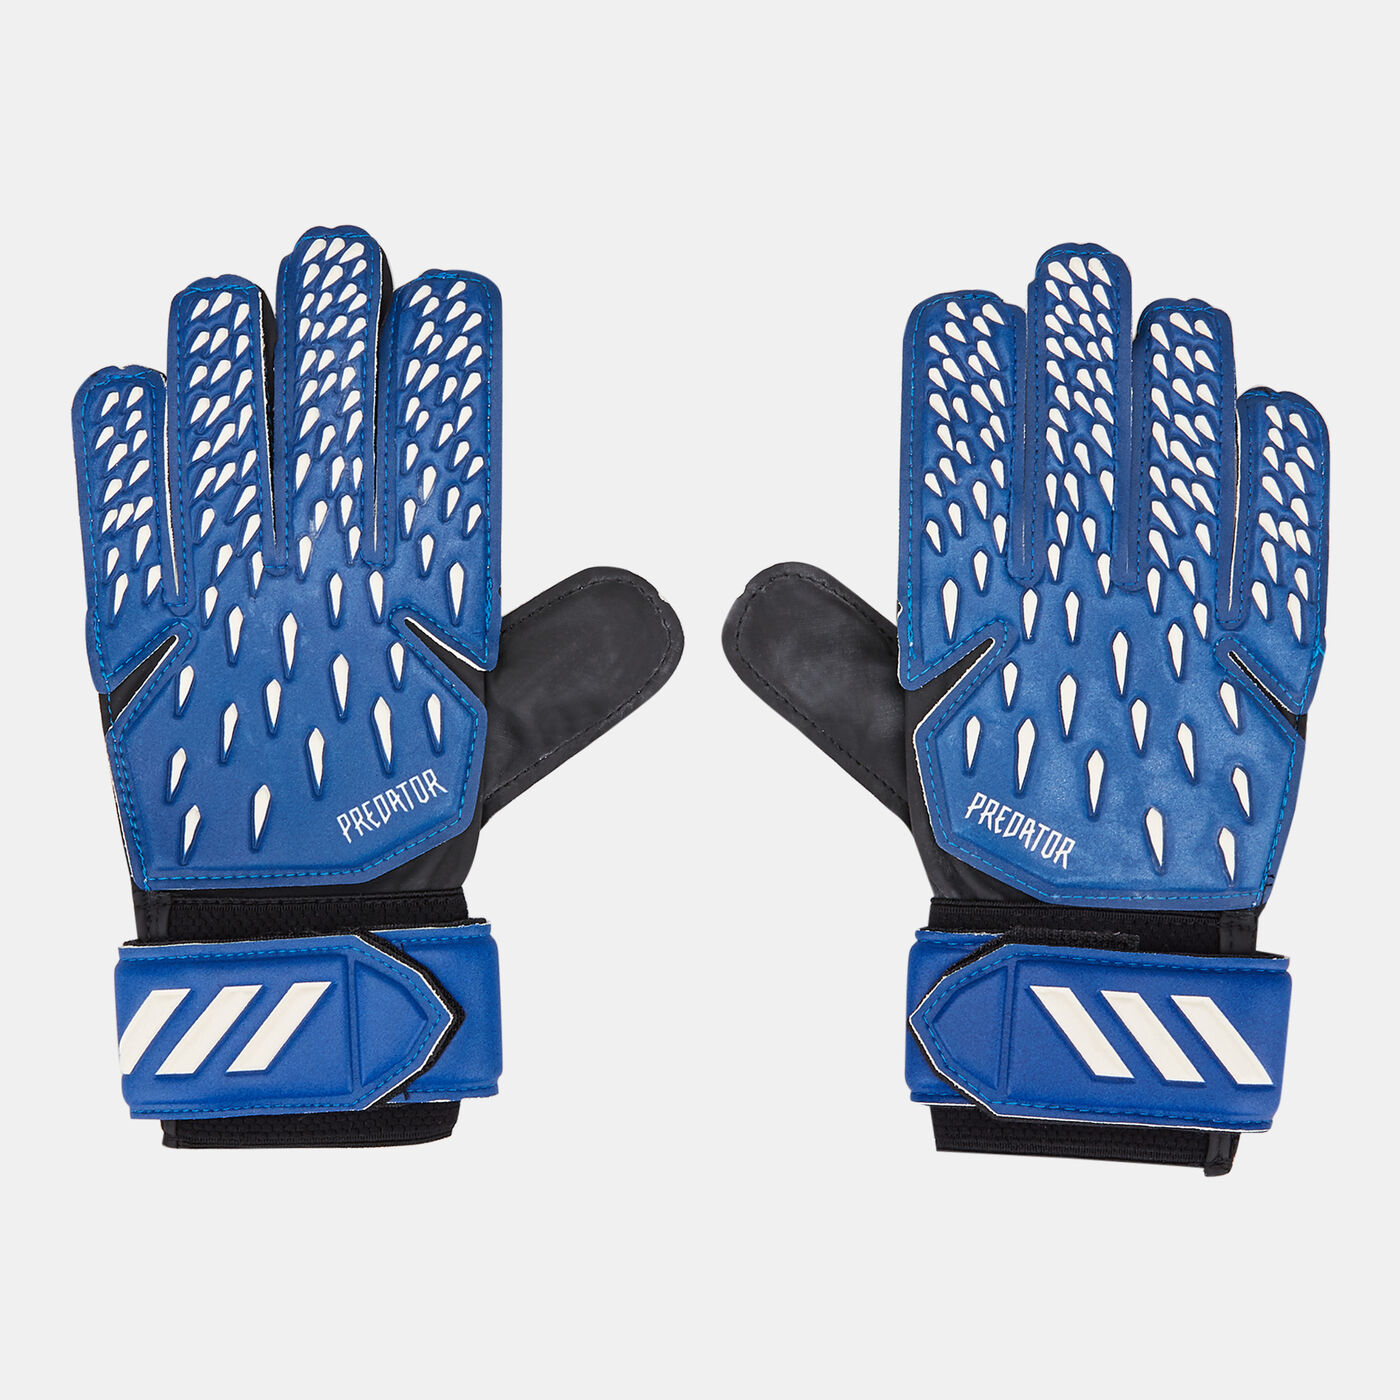 Men's Predator Training Goalkeeper Gloves